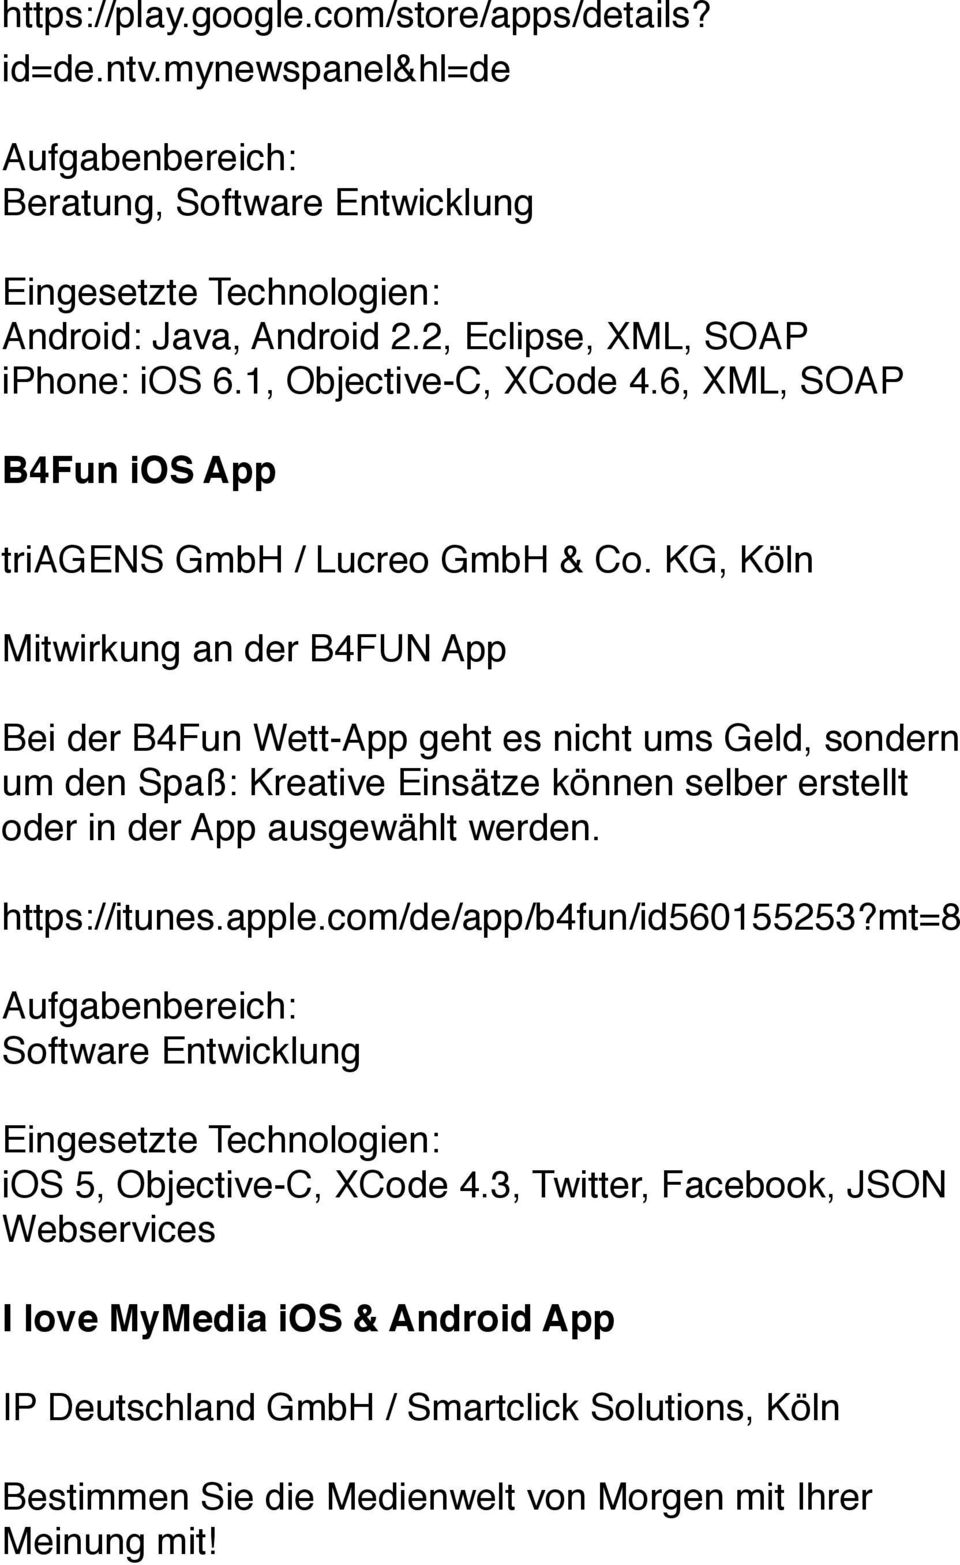 KG, Köln Mitwirkung an der B4FUN App Bei der B4Fun Wett-App geht es nicht ums Geld, sondern um den Spaß: Kreative Einsätze können selber erstellt oder in der App ausgewählt werden.